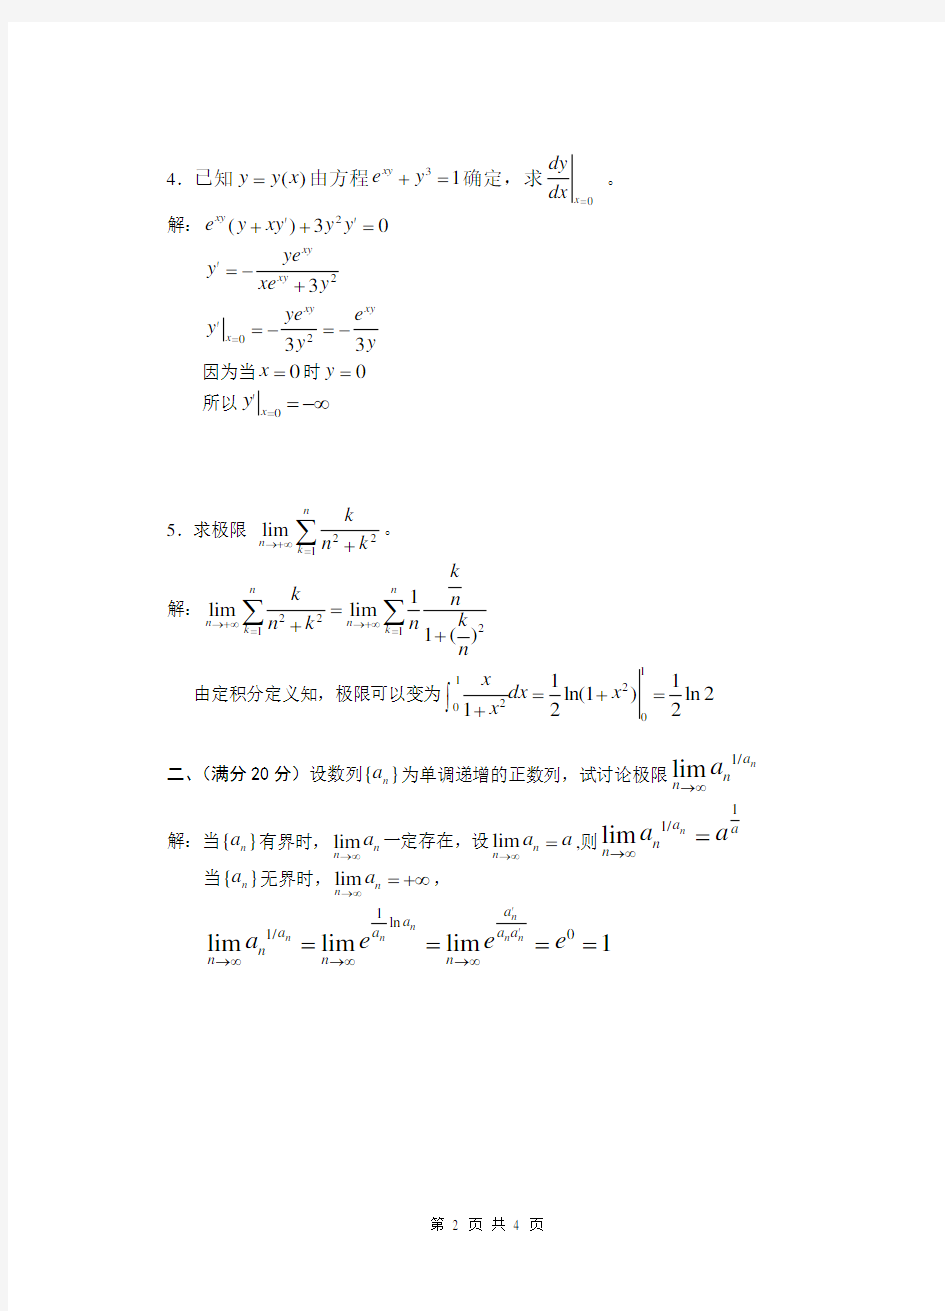 2015浙江省高等数学( 工科类)竞赛试题(答案)